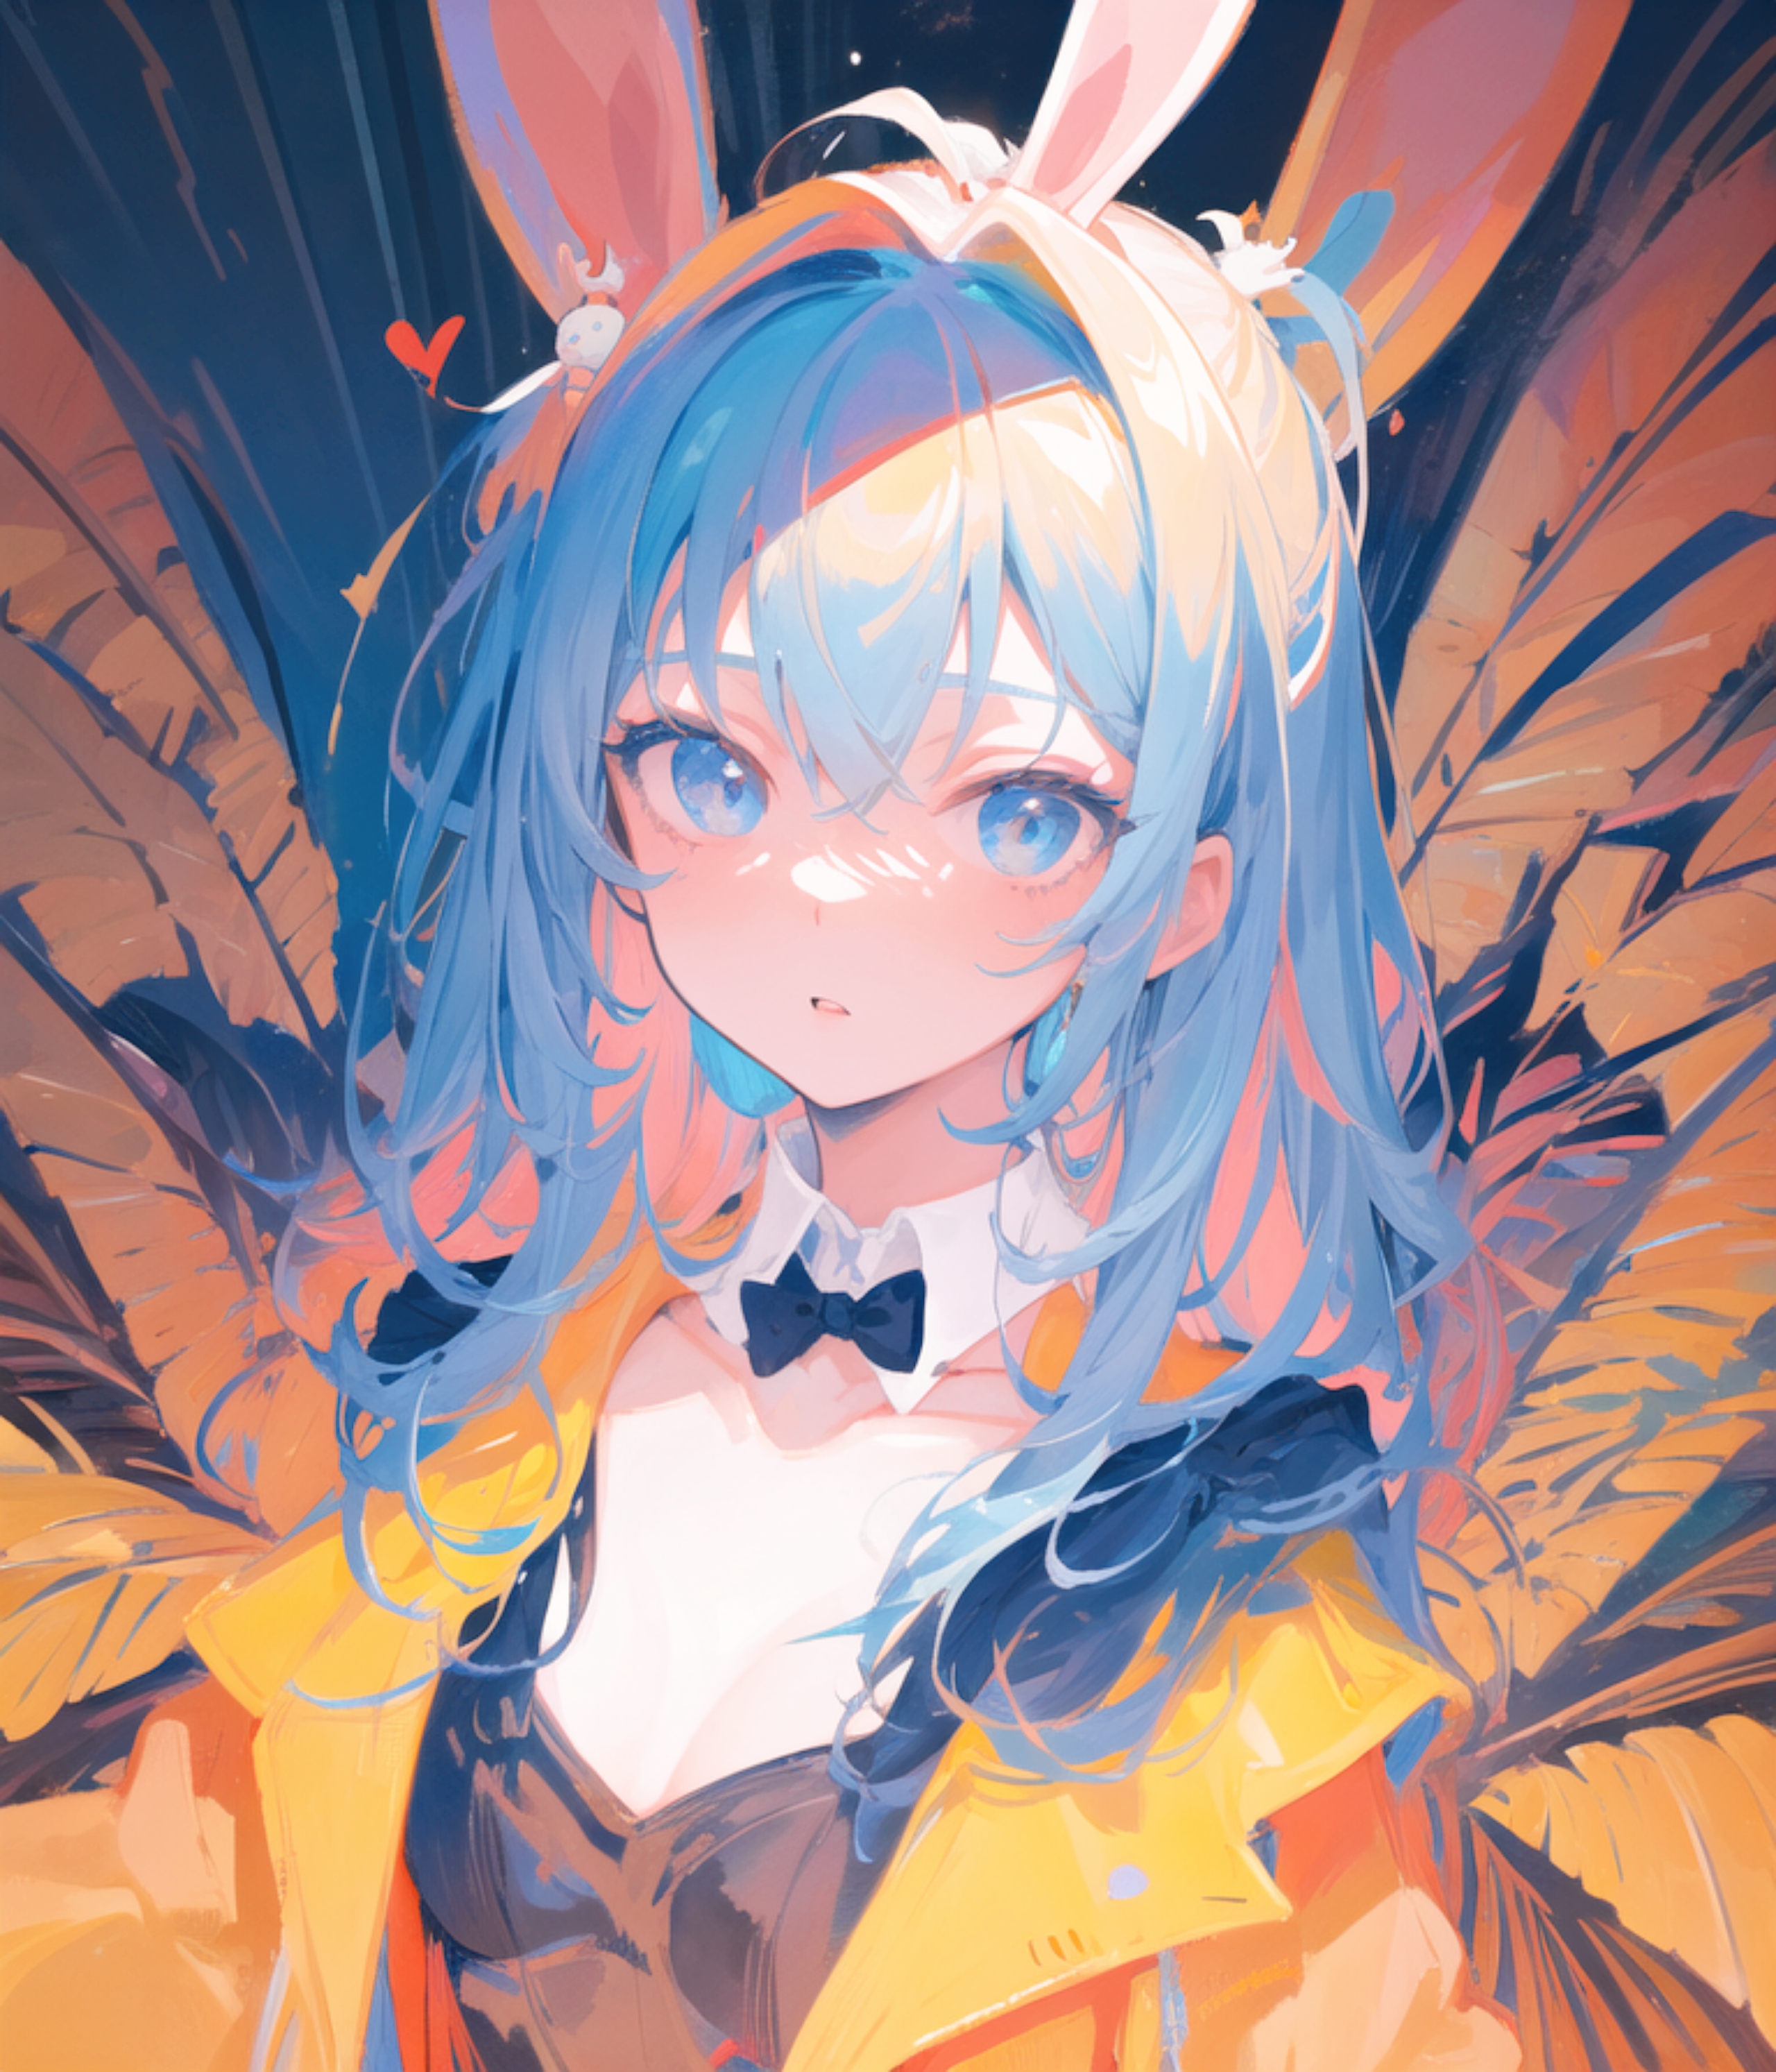 Anime 2560x2987 anime girls digital art blue hair anime portrait display bunny ears bow tie blue eyes heart bunny girl AI art